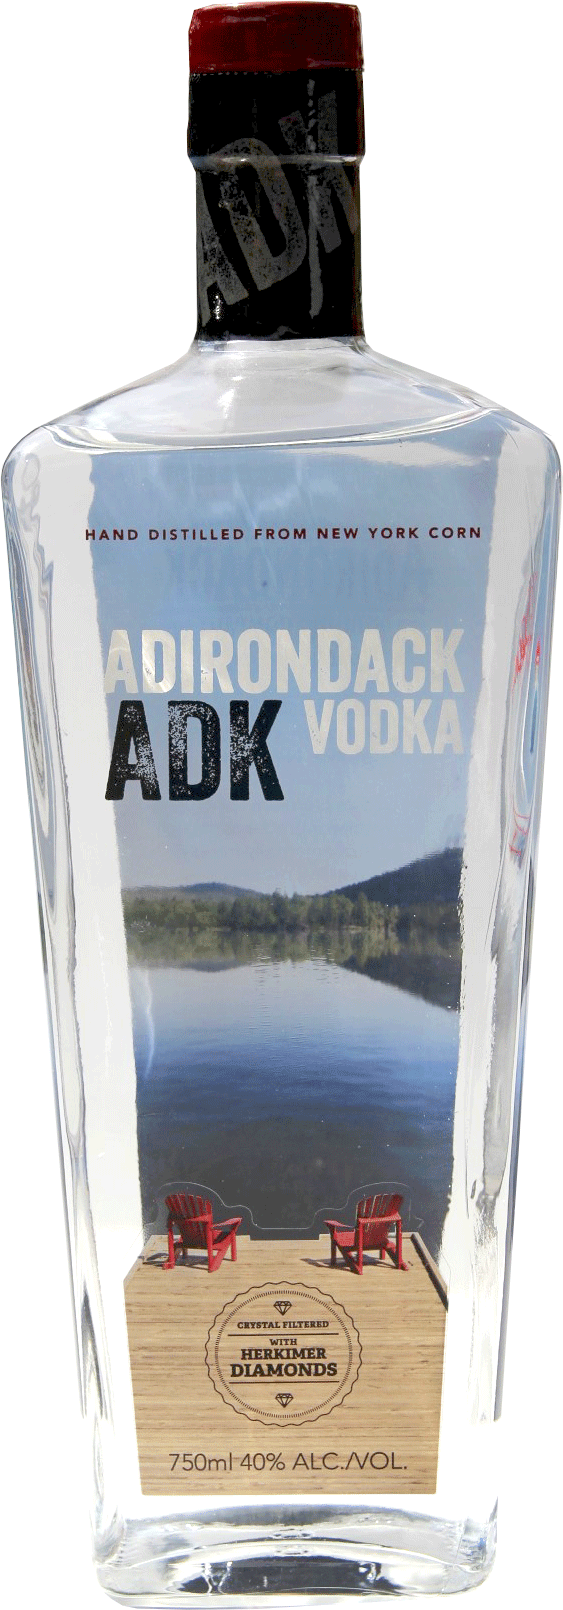  Top Vodka Brand Logo: Adirondack Vodka